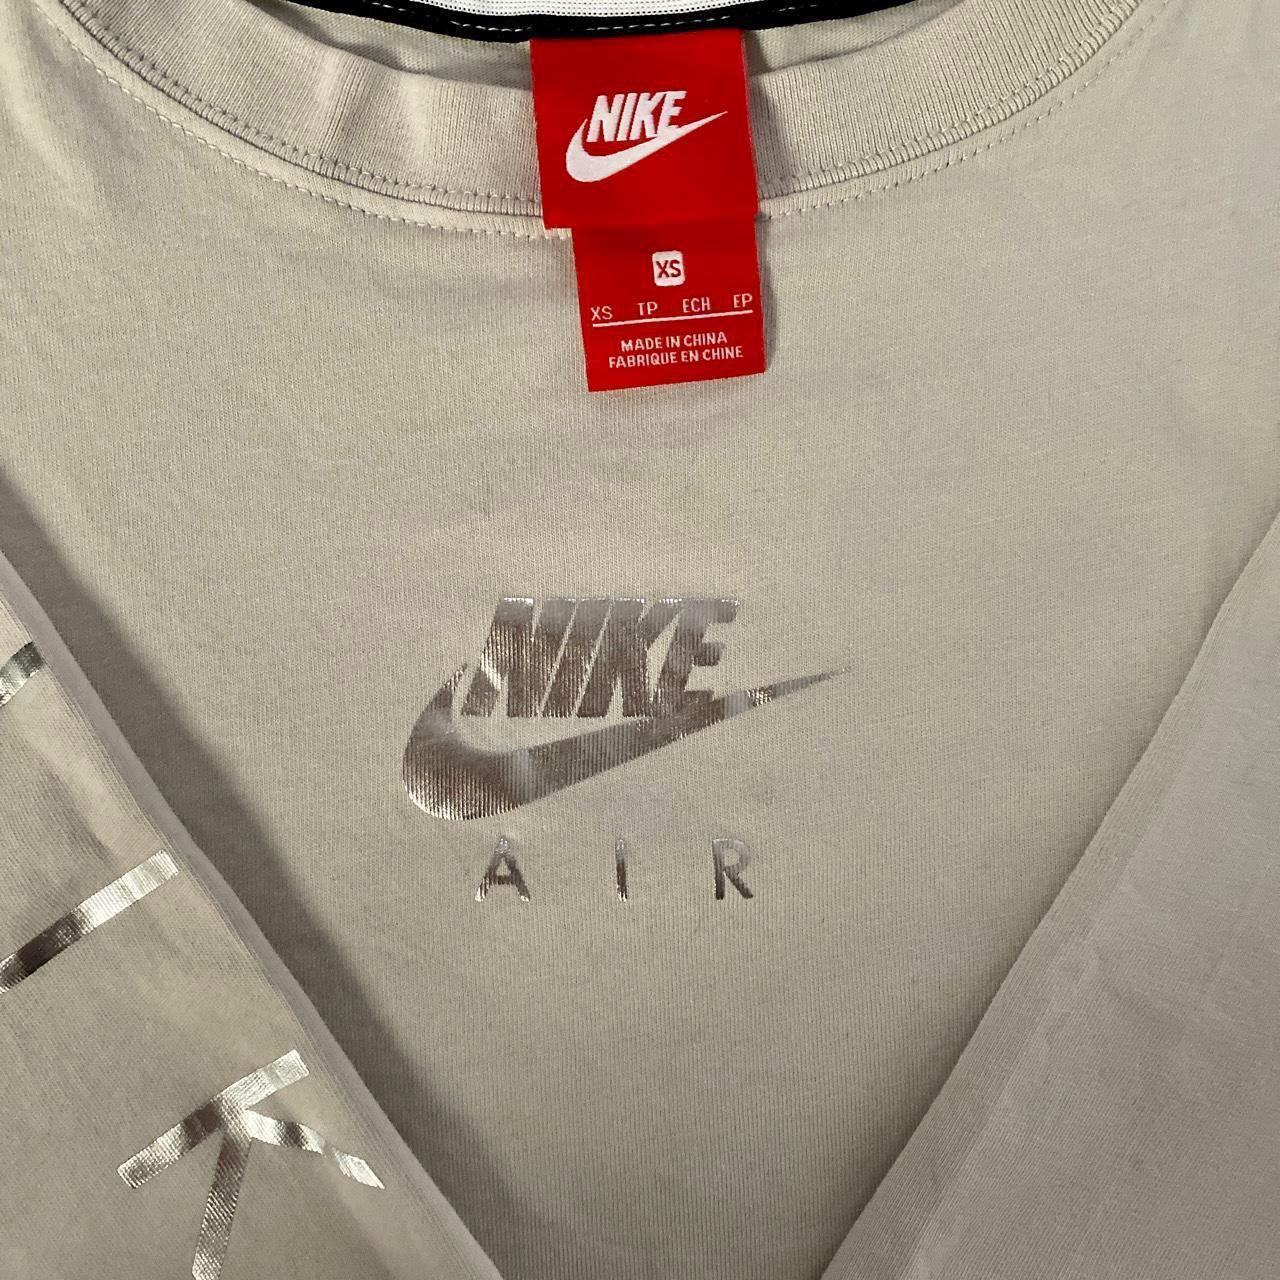 Nike Air Long Sleeve Top/T-shirt Ladies Light... - Depop